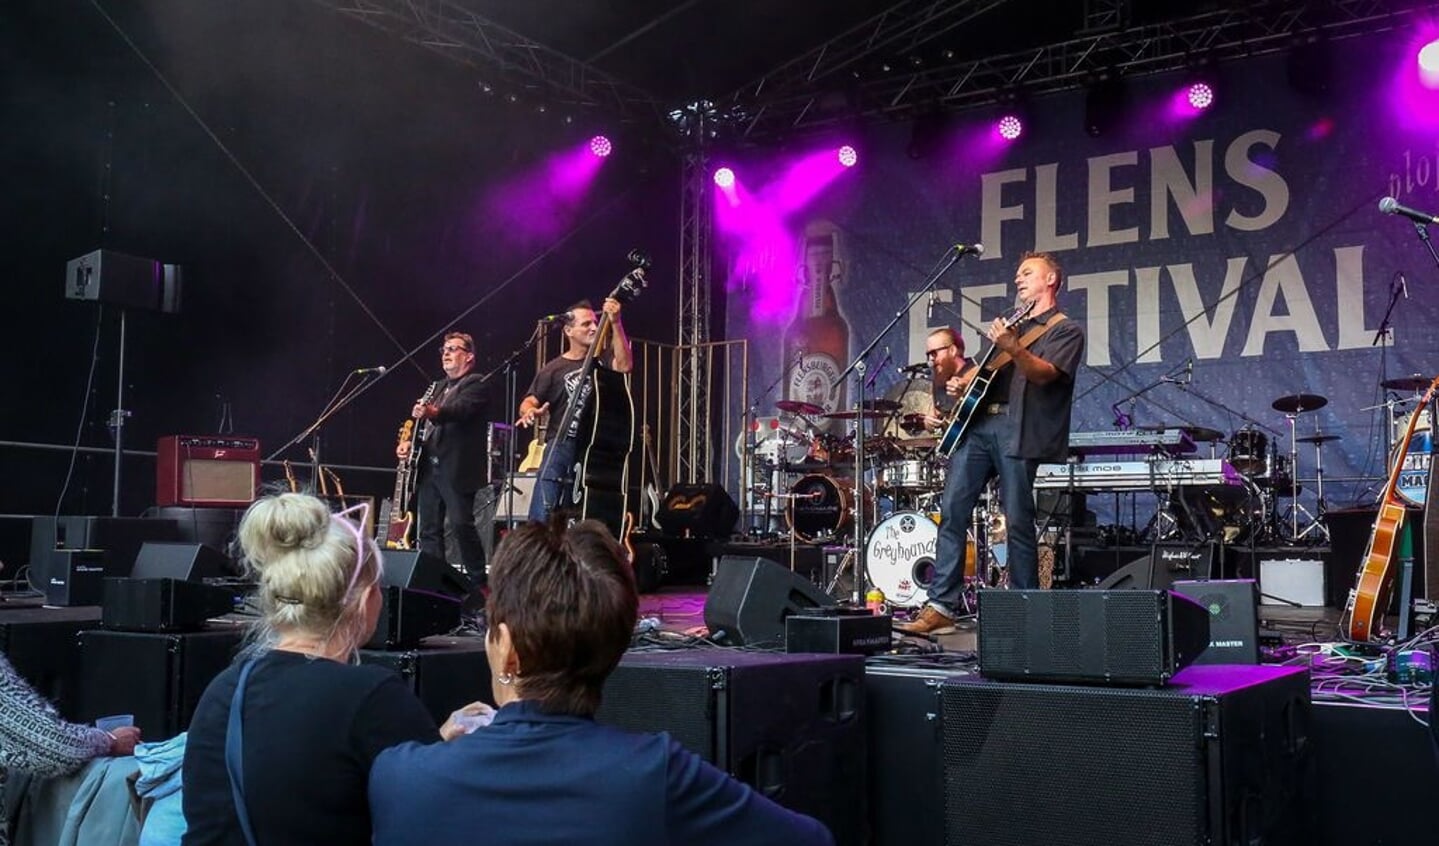 Flens-Festival over to dage - nyheder & baggrundstof fra Sydslesvig & grænselandet : FLA